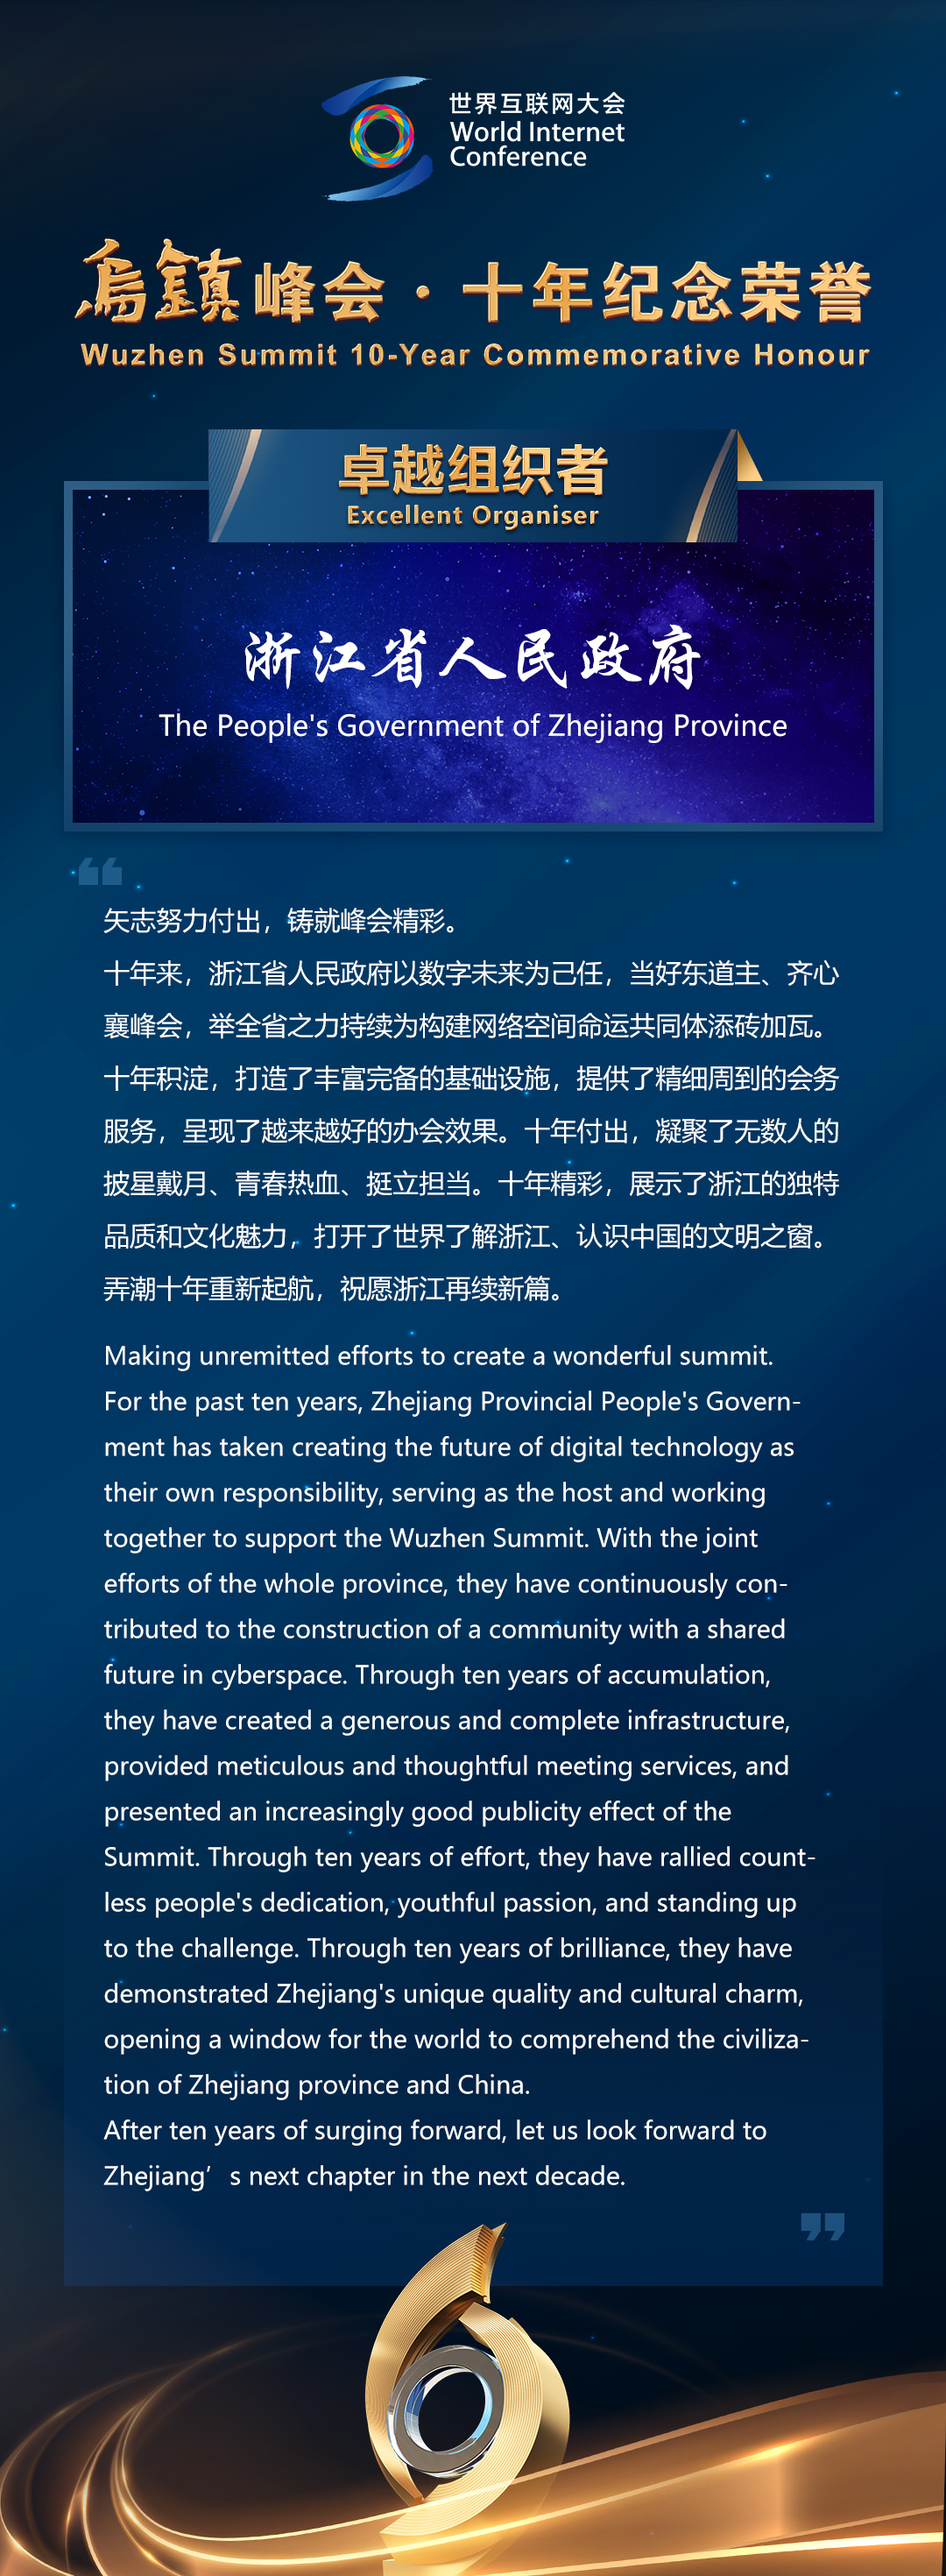 乌镇峰会十年纪念荣誉颁发仪式在浙江乌镇举办